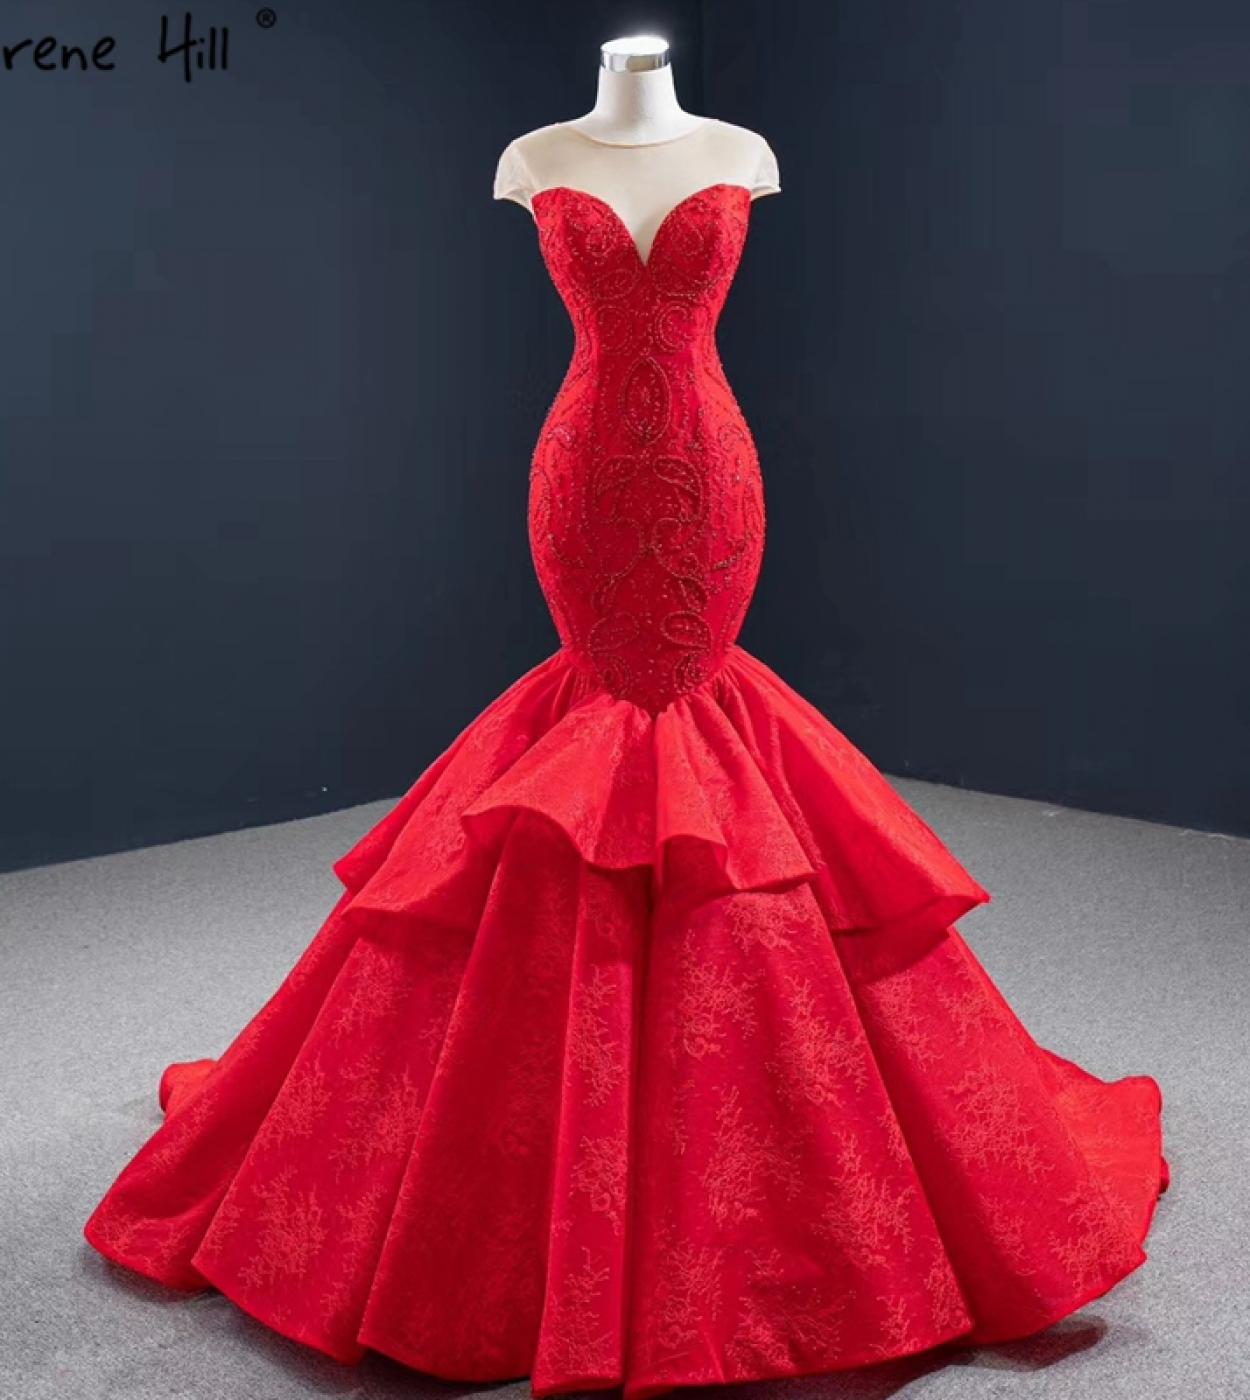 בתולת ים אדומה שמלות ערב כובע שרוולים חרוזים תחרה שמלה רשמית שלווה היל hm67149 שמלות ערב